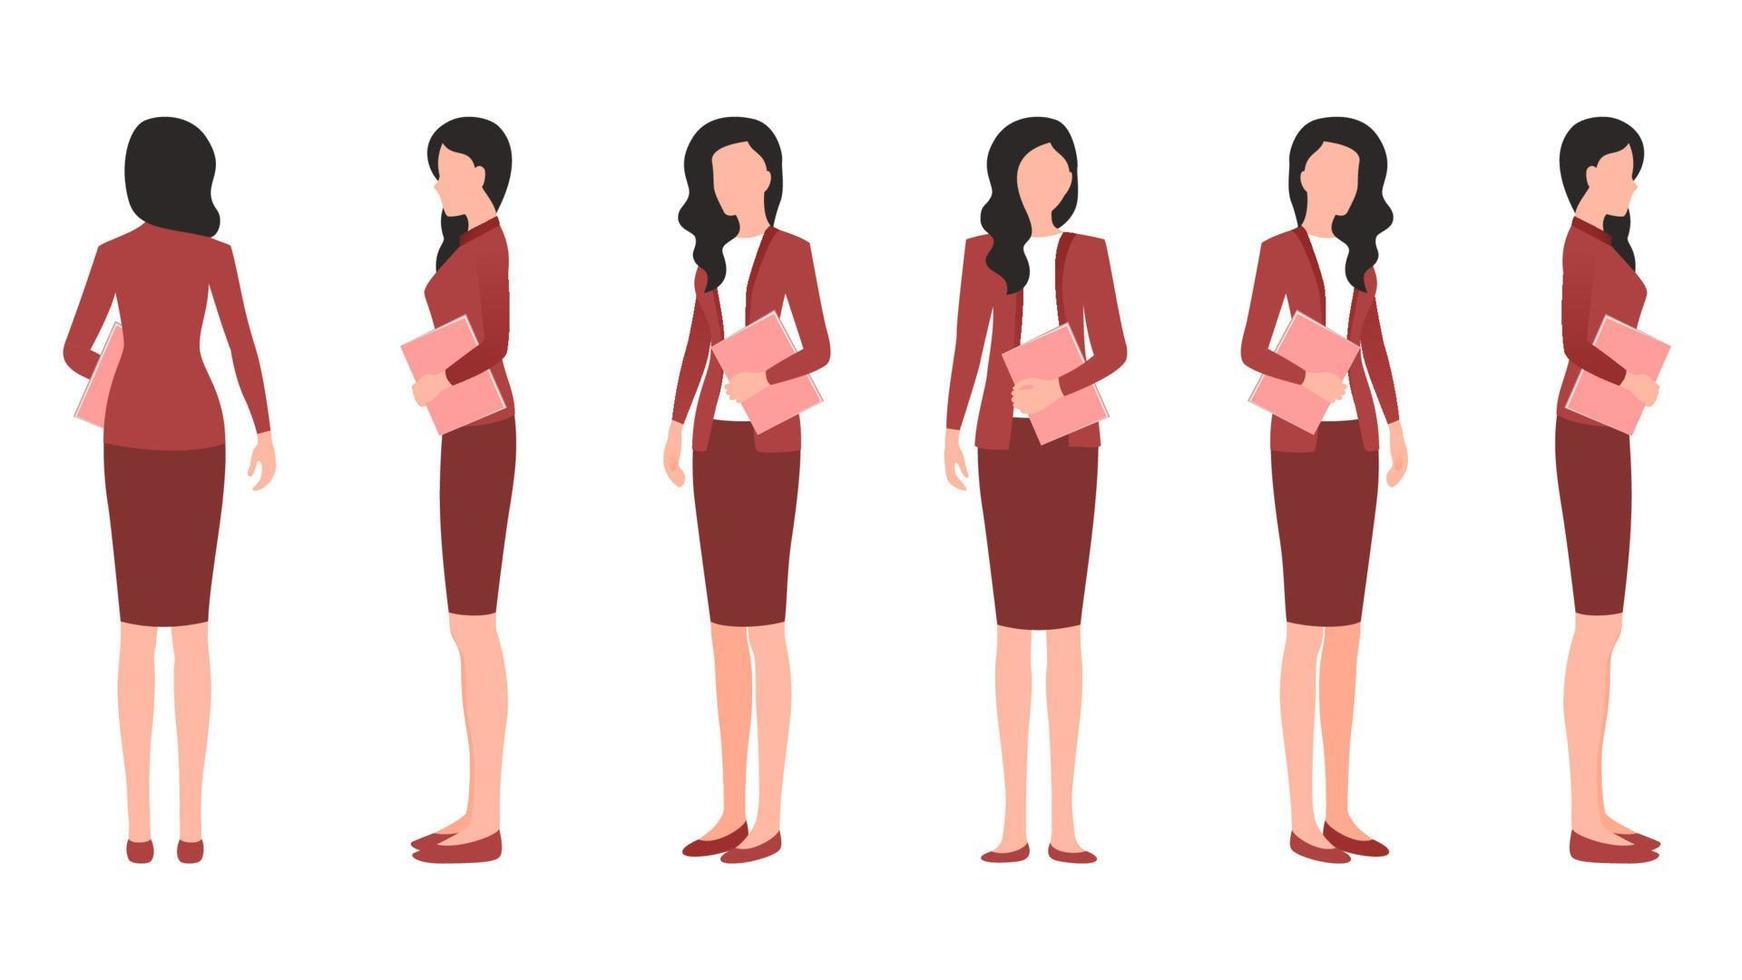 vrouw met office document platte karakter vectorillustratie gemaakt vanuit verschillende hoeken. vrouwen met office documenten platte vector tekenset.